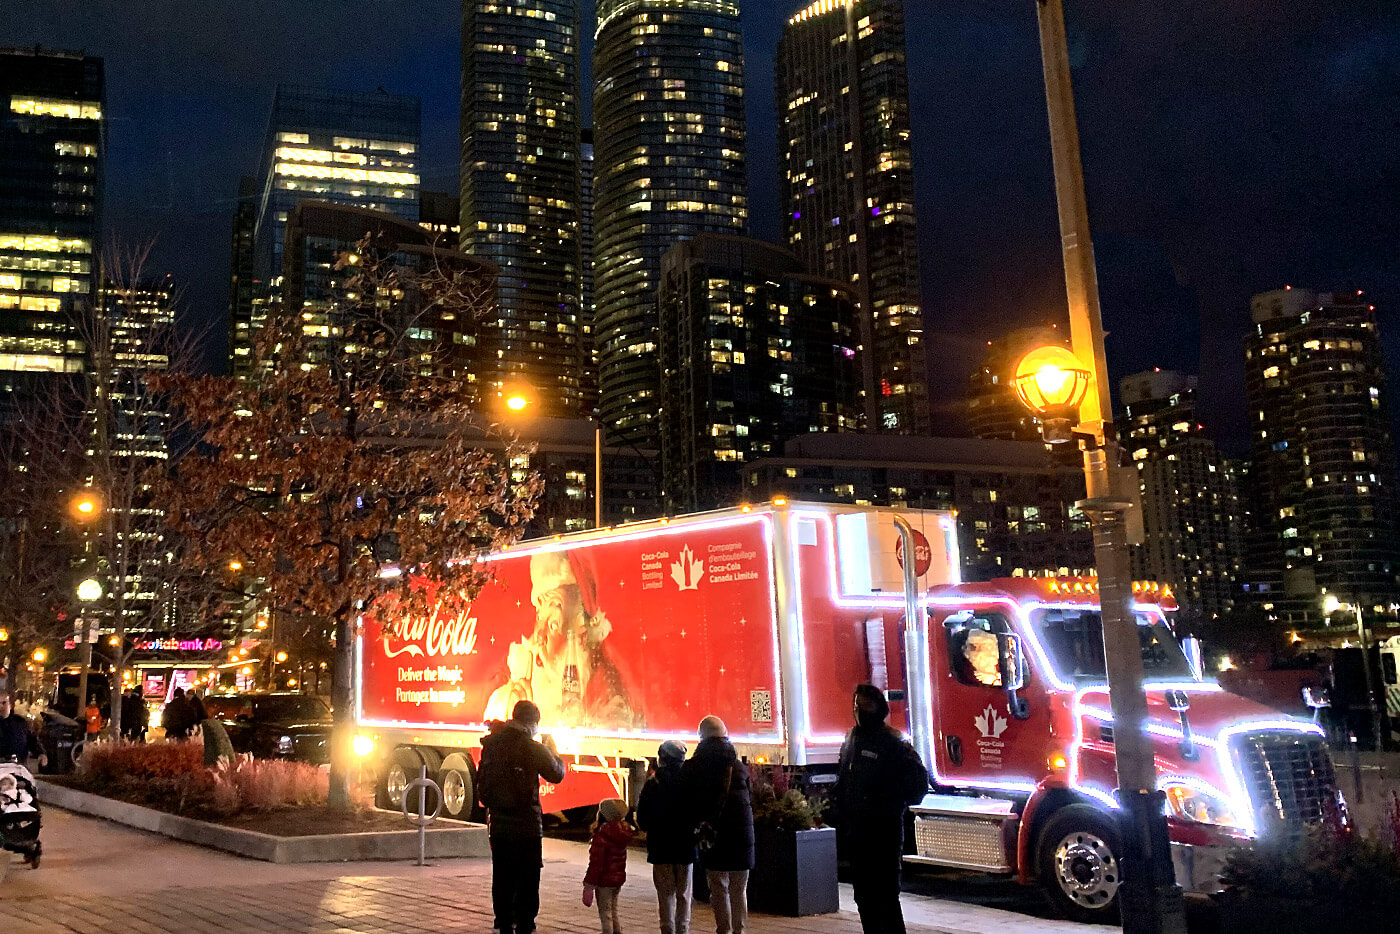 Camion des fêtes Coca-Cola wrap du camion fait par Turbo Images